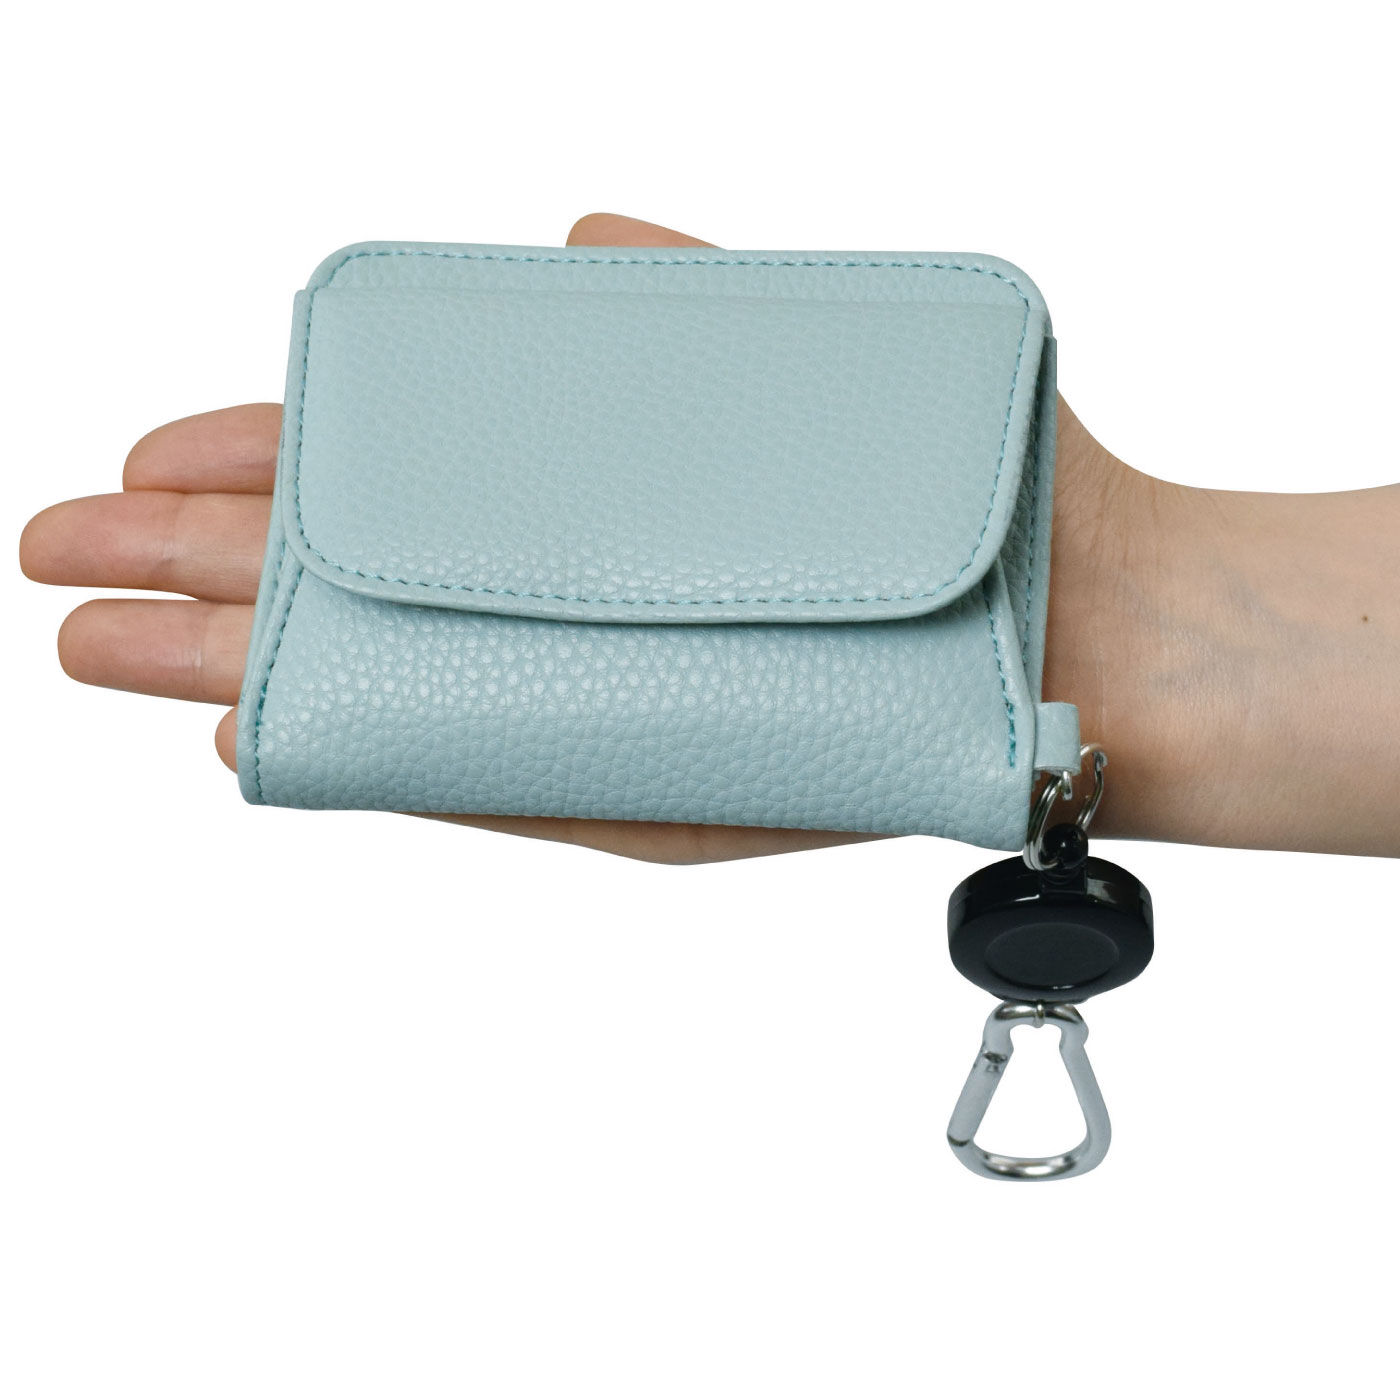 FELISSIMO PARTNERS|小銭入れがガバッと開いて取り出しやすいリール付きコンパクト財布|手のひらサイズでコンパクト。